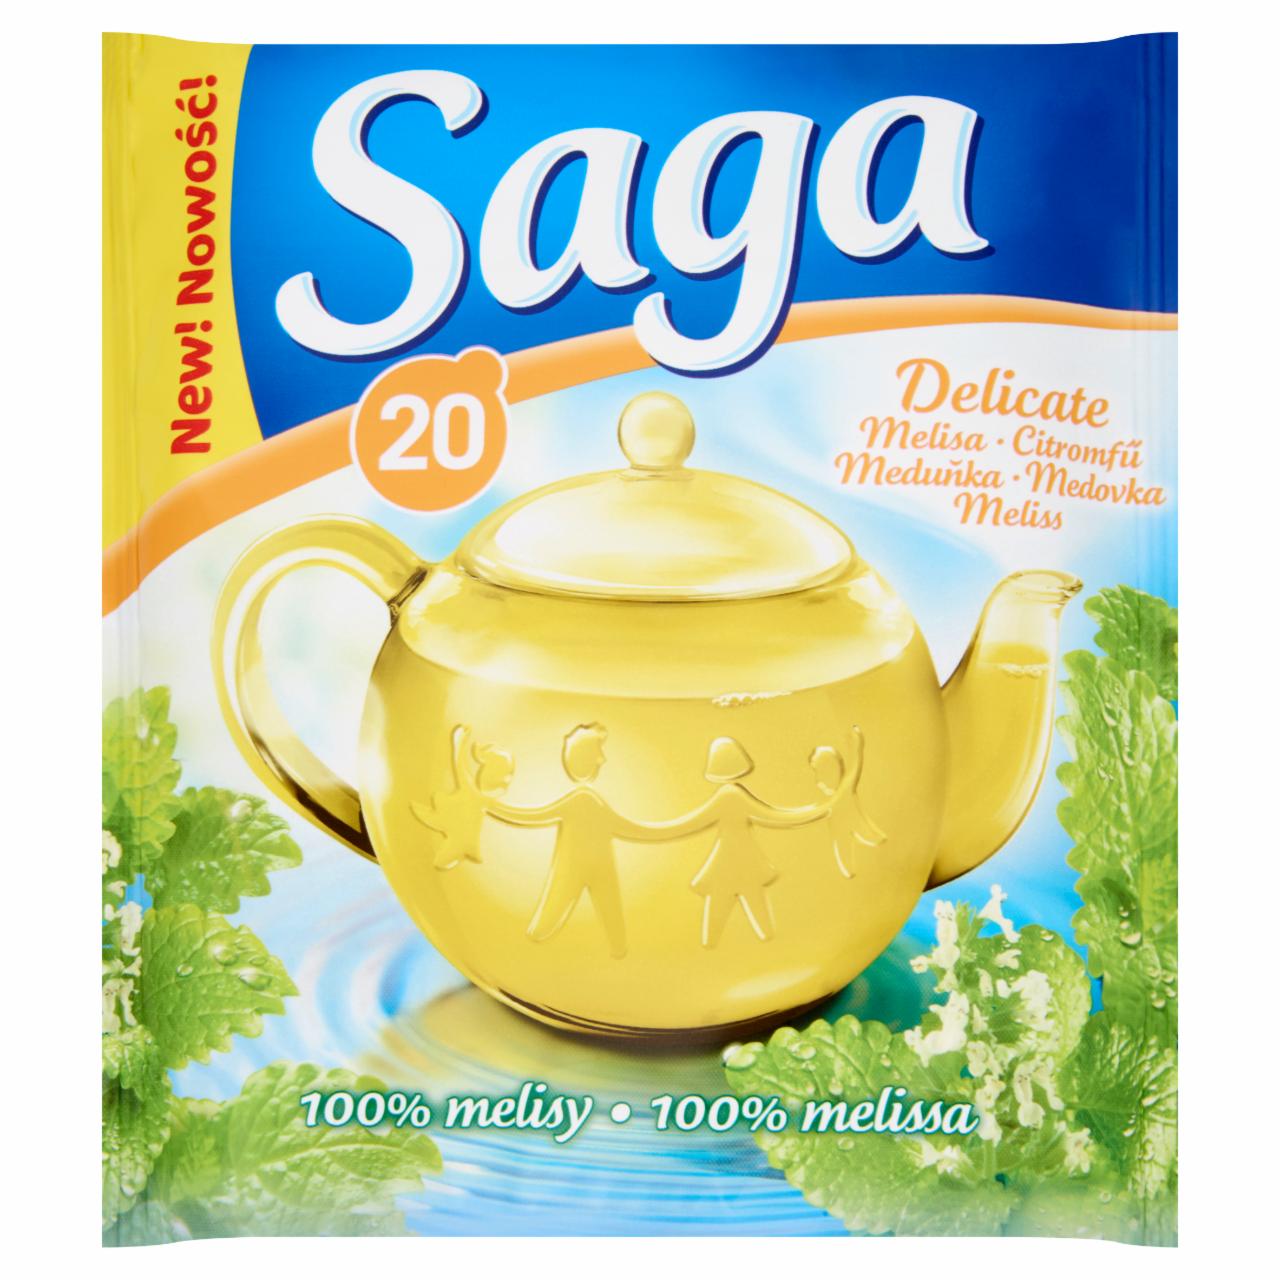 Képek - Saga citromfű herba tea 20 filter